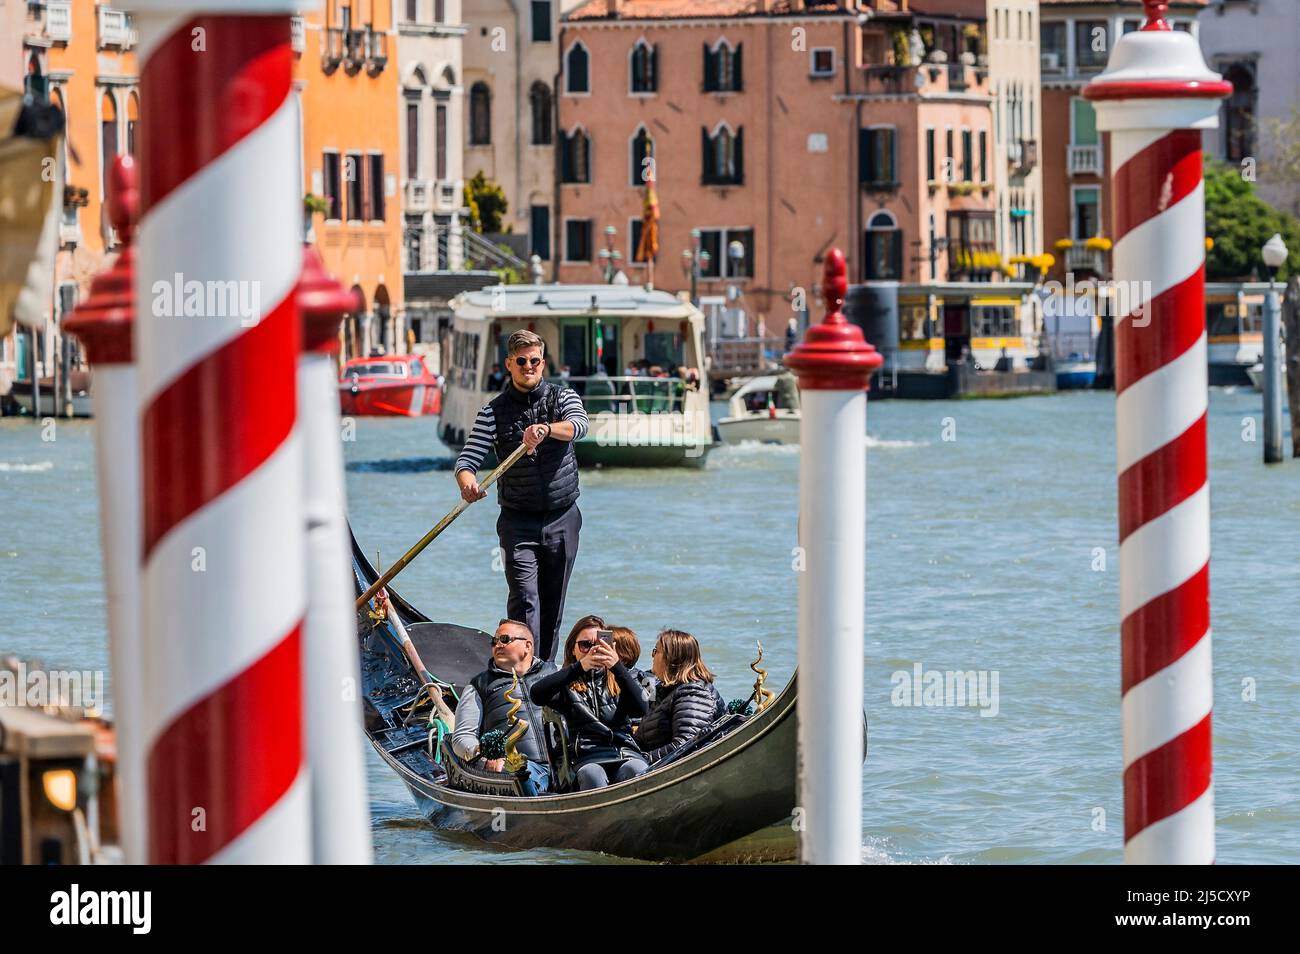 Les gondoles sont un moyen de transport maritime préféré, bien que cher, sur le Grand Canal. Les canaux sont les artères principales qui portent toutes les formes de transport de l'eau - Venise au début de la Biennale di Venezia en 2022. Banque D'Images